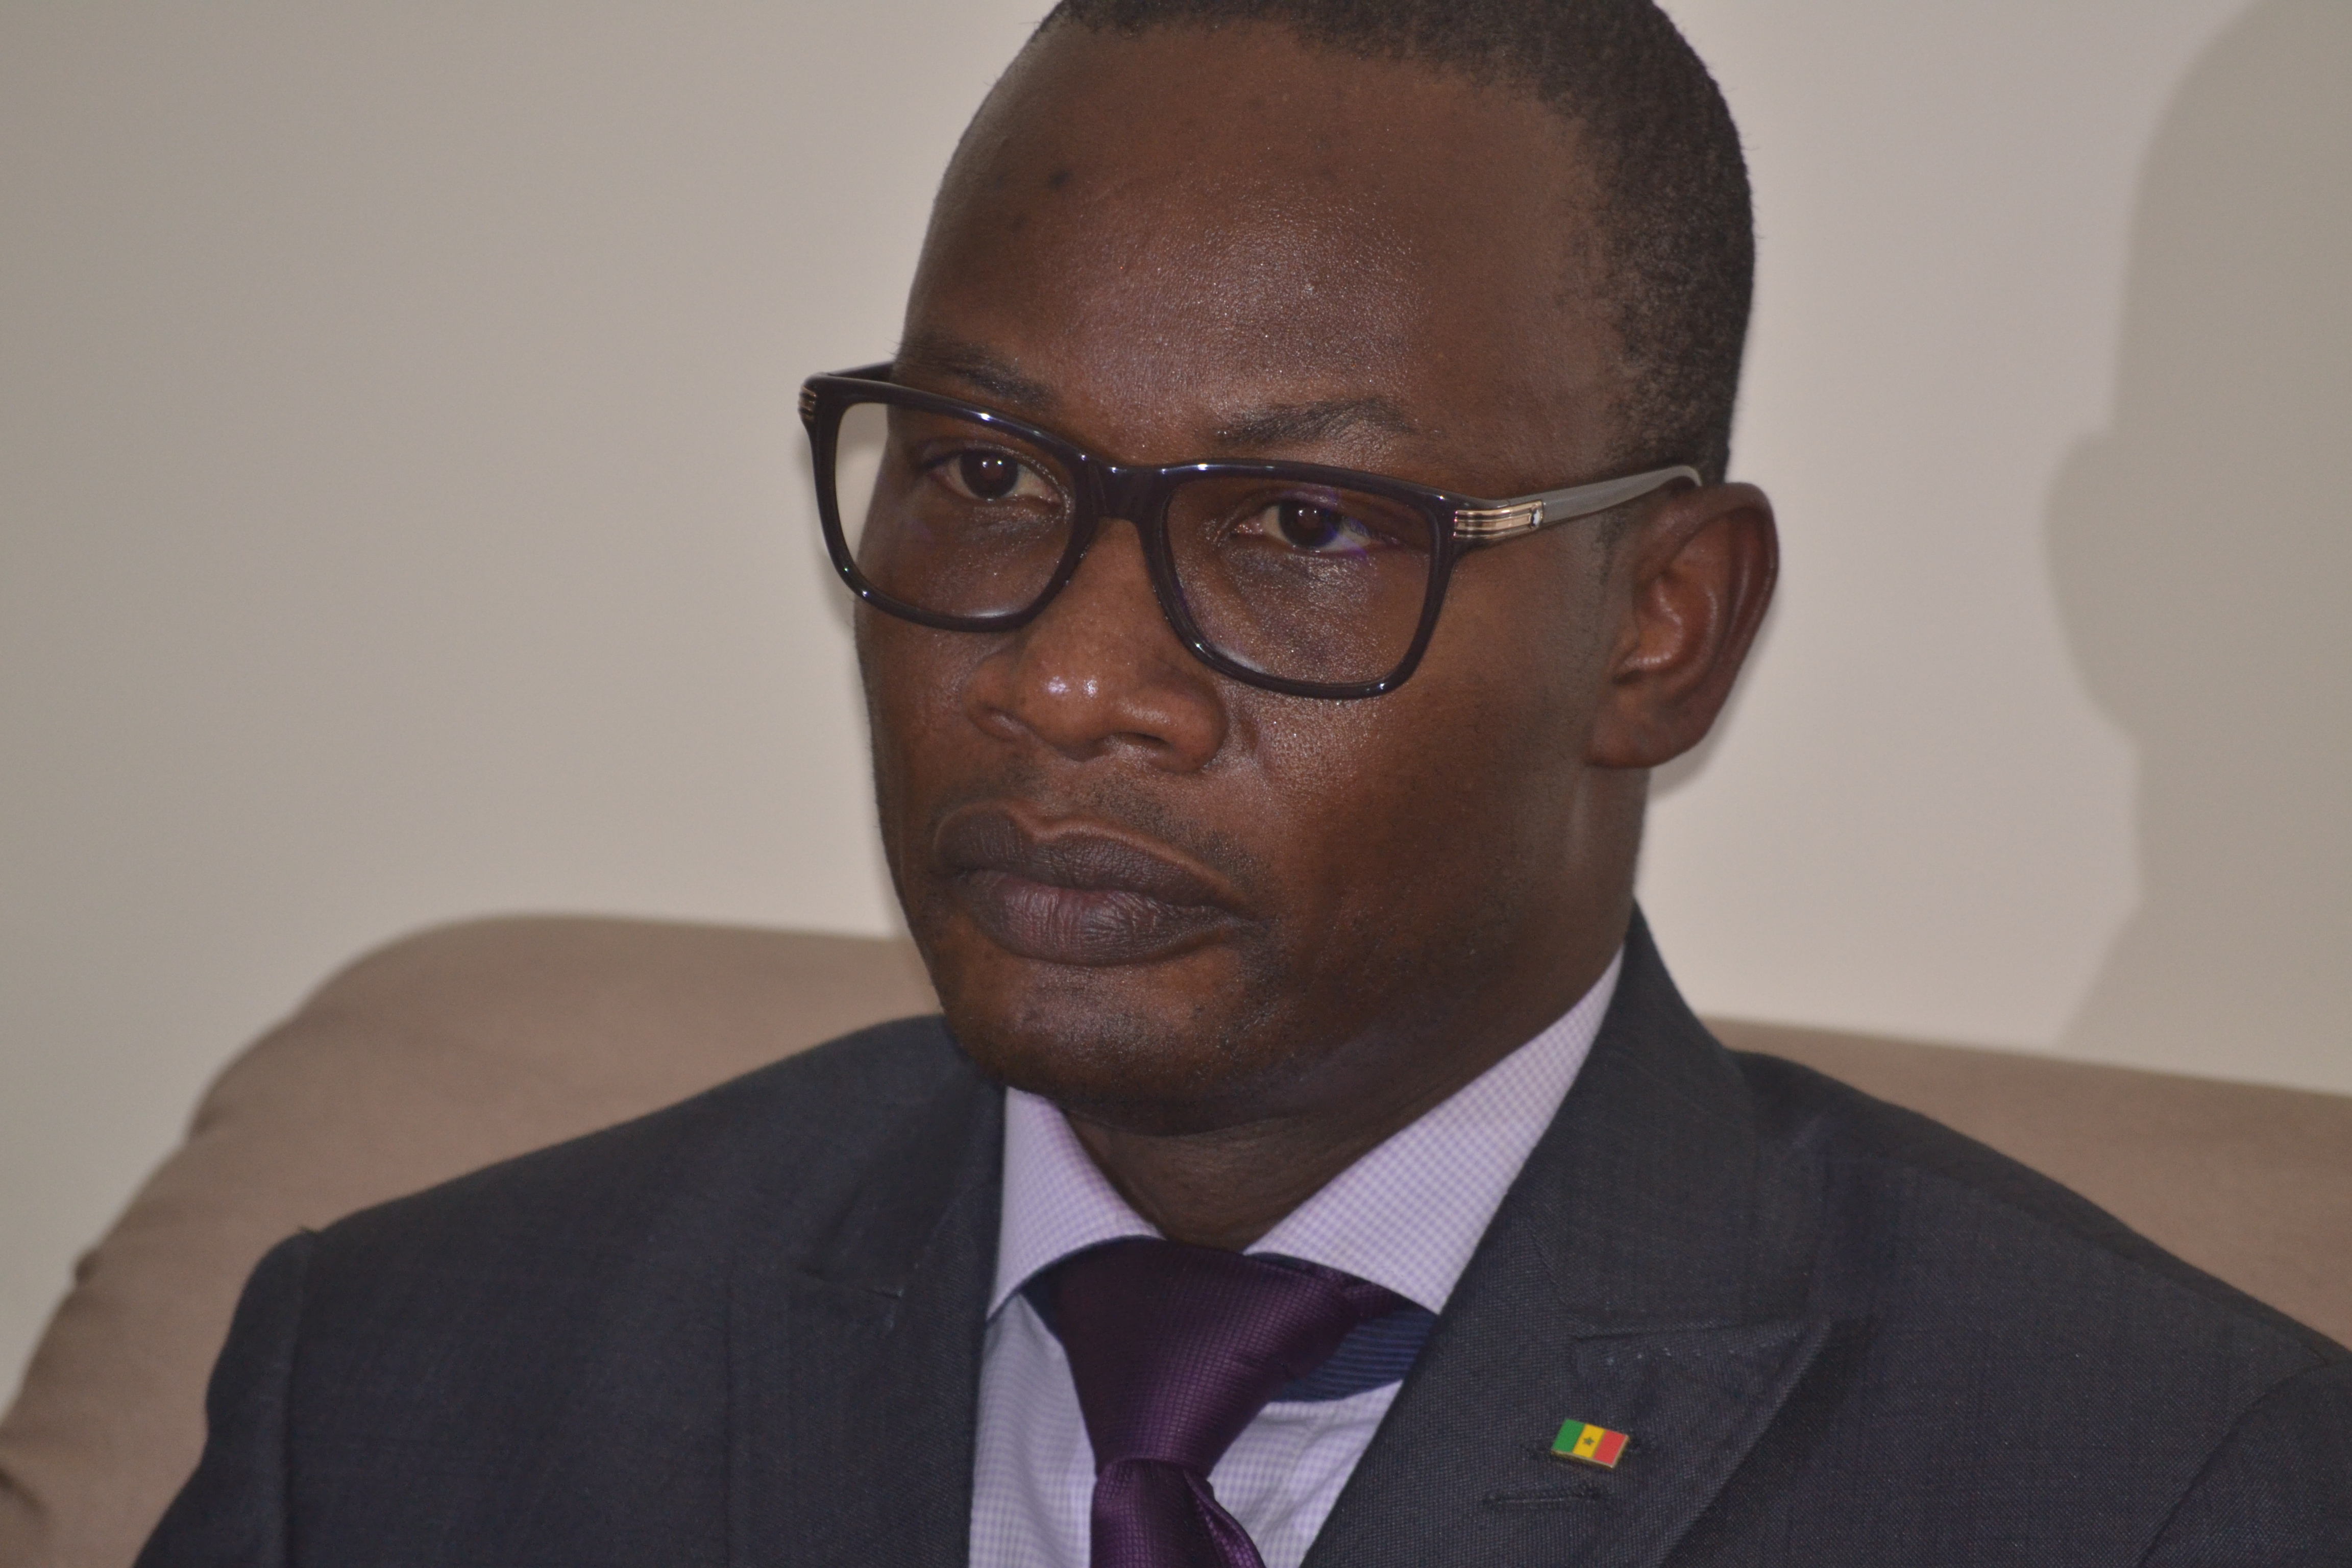 Me Moussa Diop bouscule Idrissa Seck dans ses fiefs